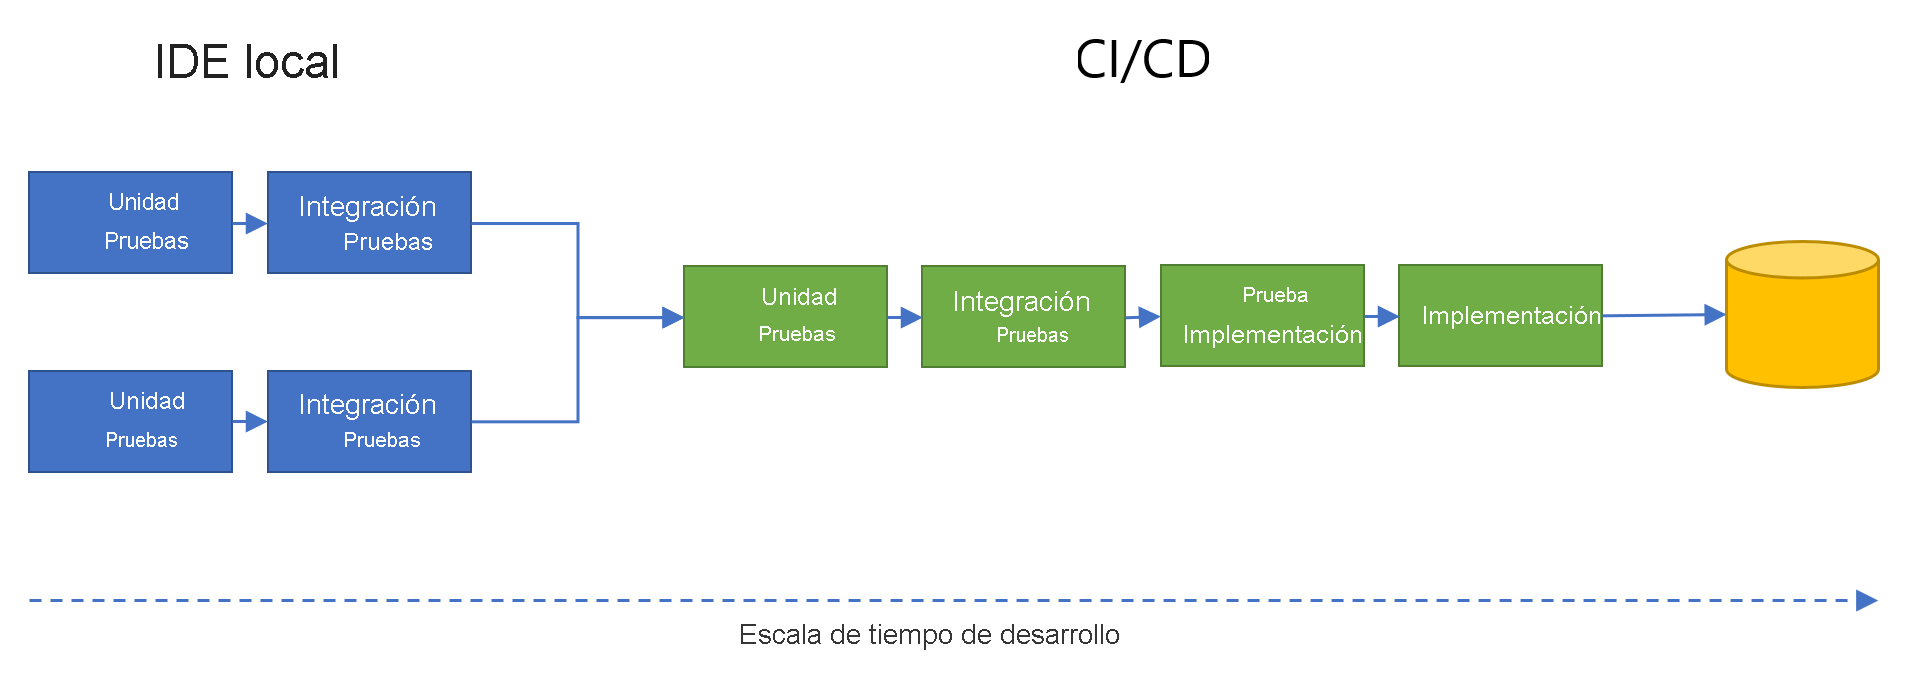 Diagrama que muestra pruebas unitarias paralelas y pruebas de integración en IDEs locales, fusionándose en el flujo de desarrollo CI/CD con pruebas unitarias, pruebas de integración, implementación de pruebas y implementación final.